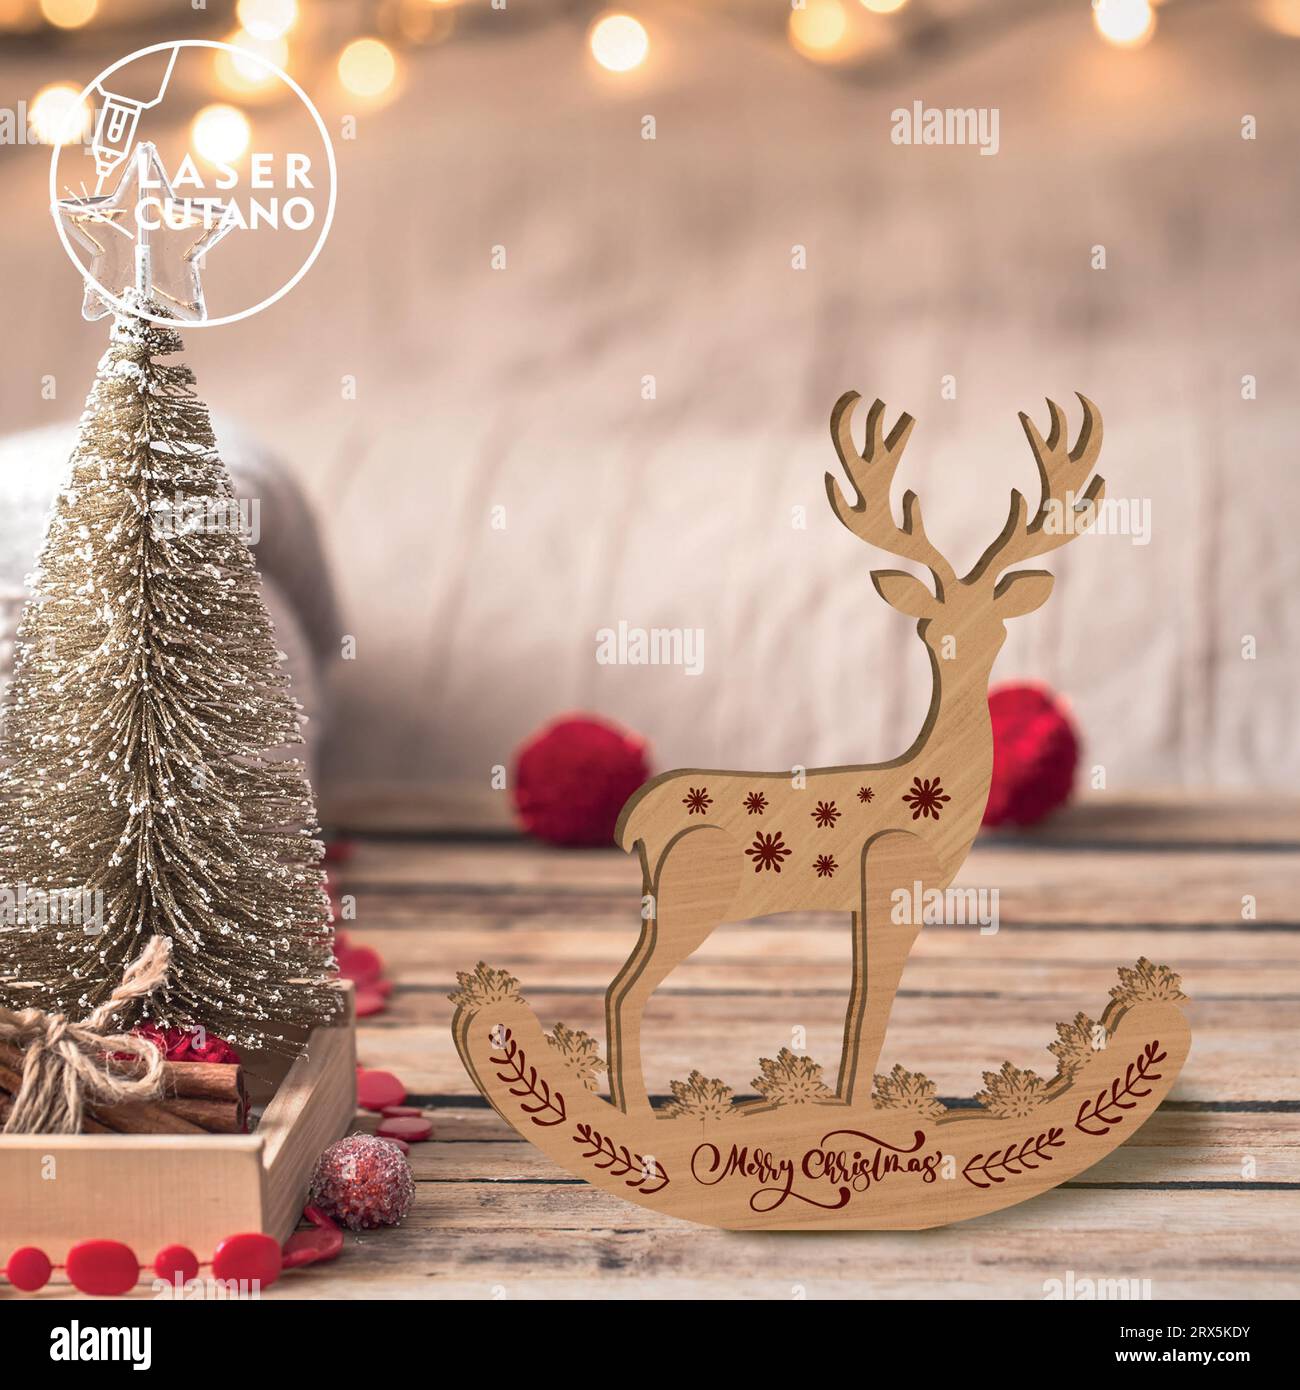 Verleihen Sie Ihrem Weihnachtsdekor einen Hauch von rustikalem Charme und zeitloser Eleganz mit unseren Produkten aus Hirschholz. Stock Vektor